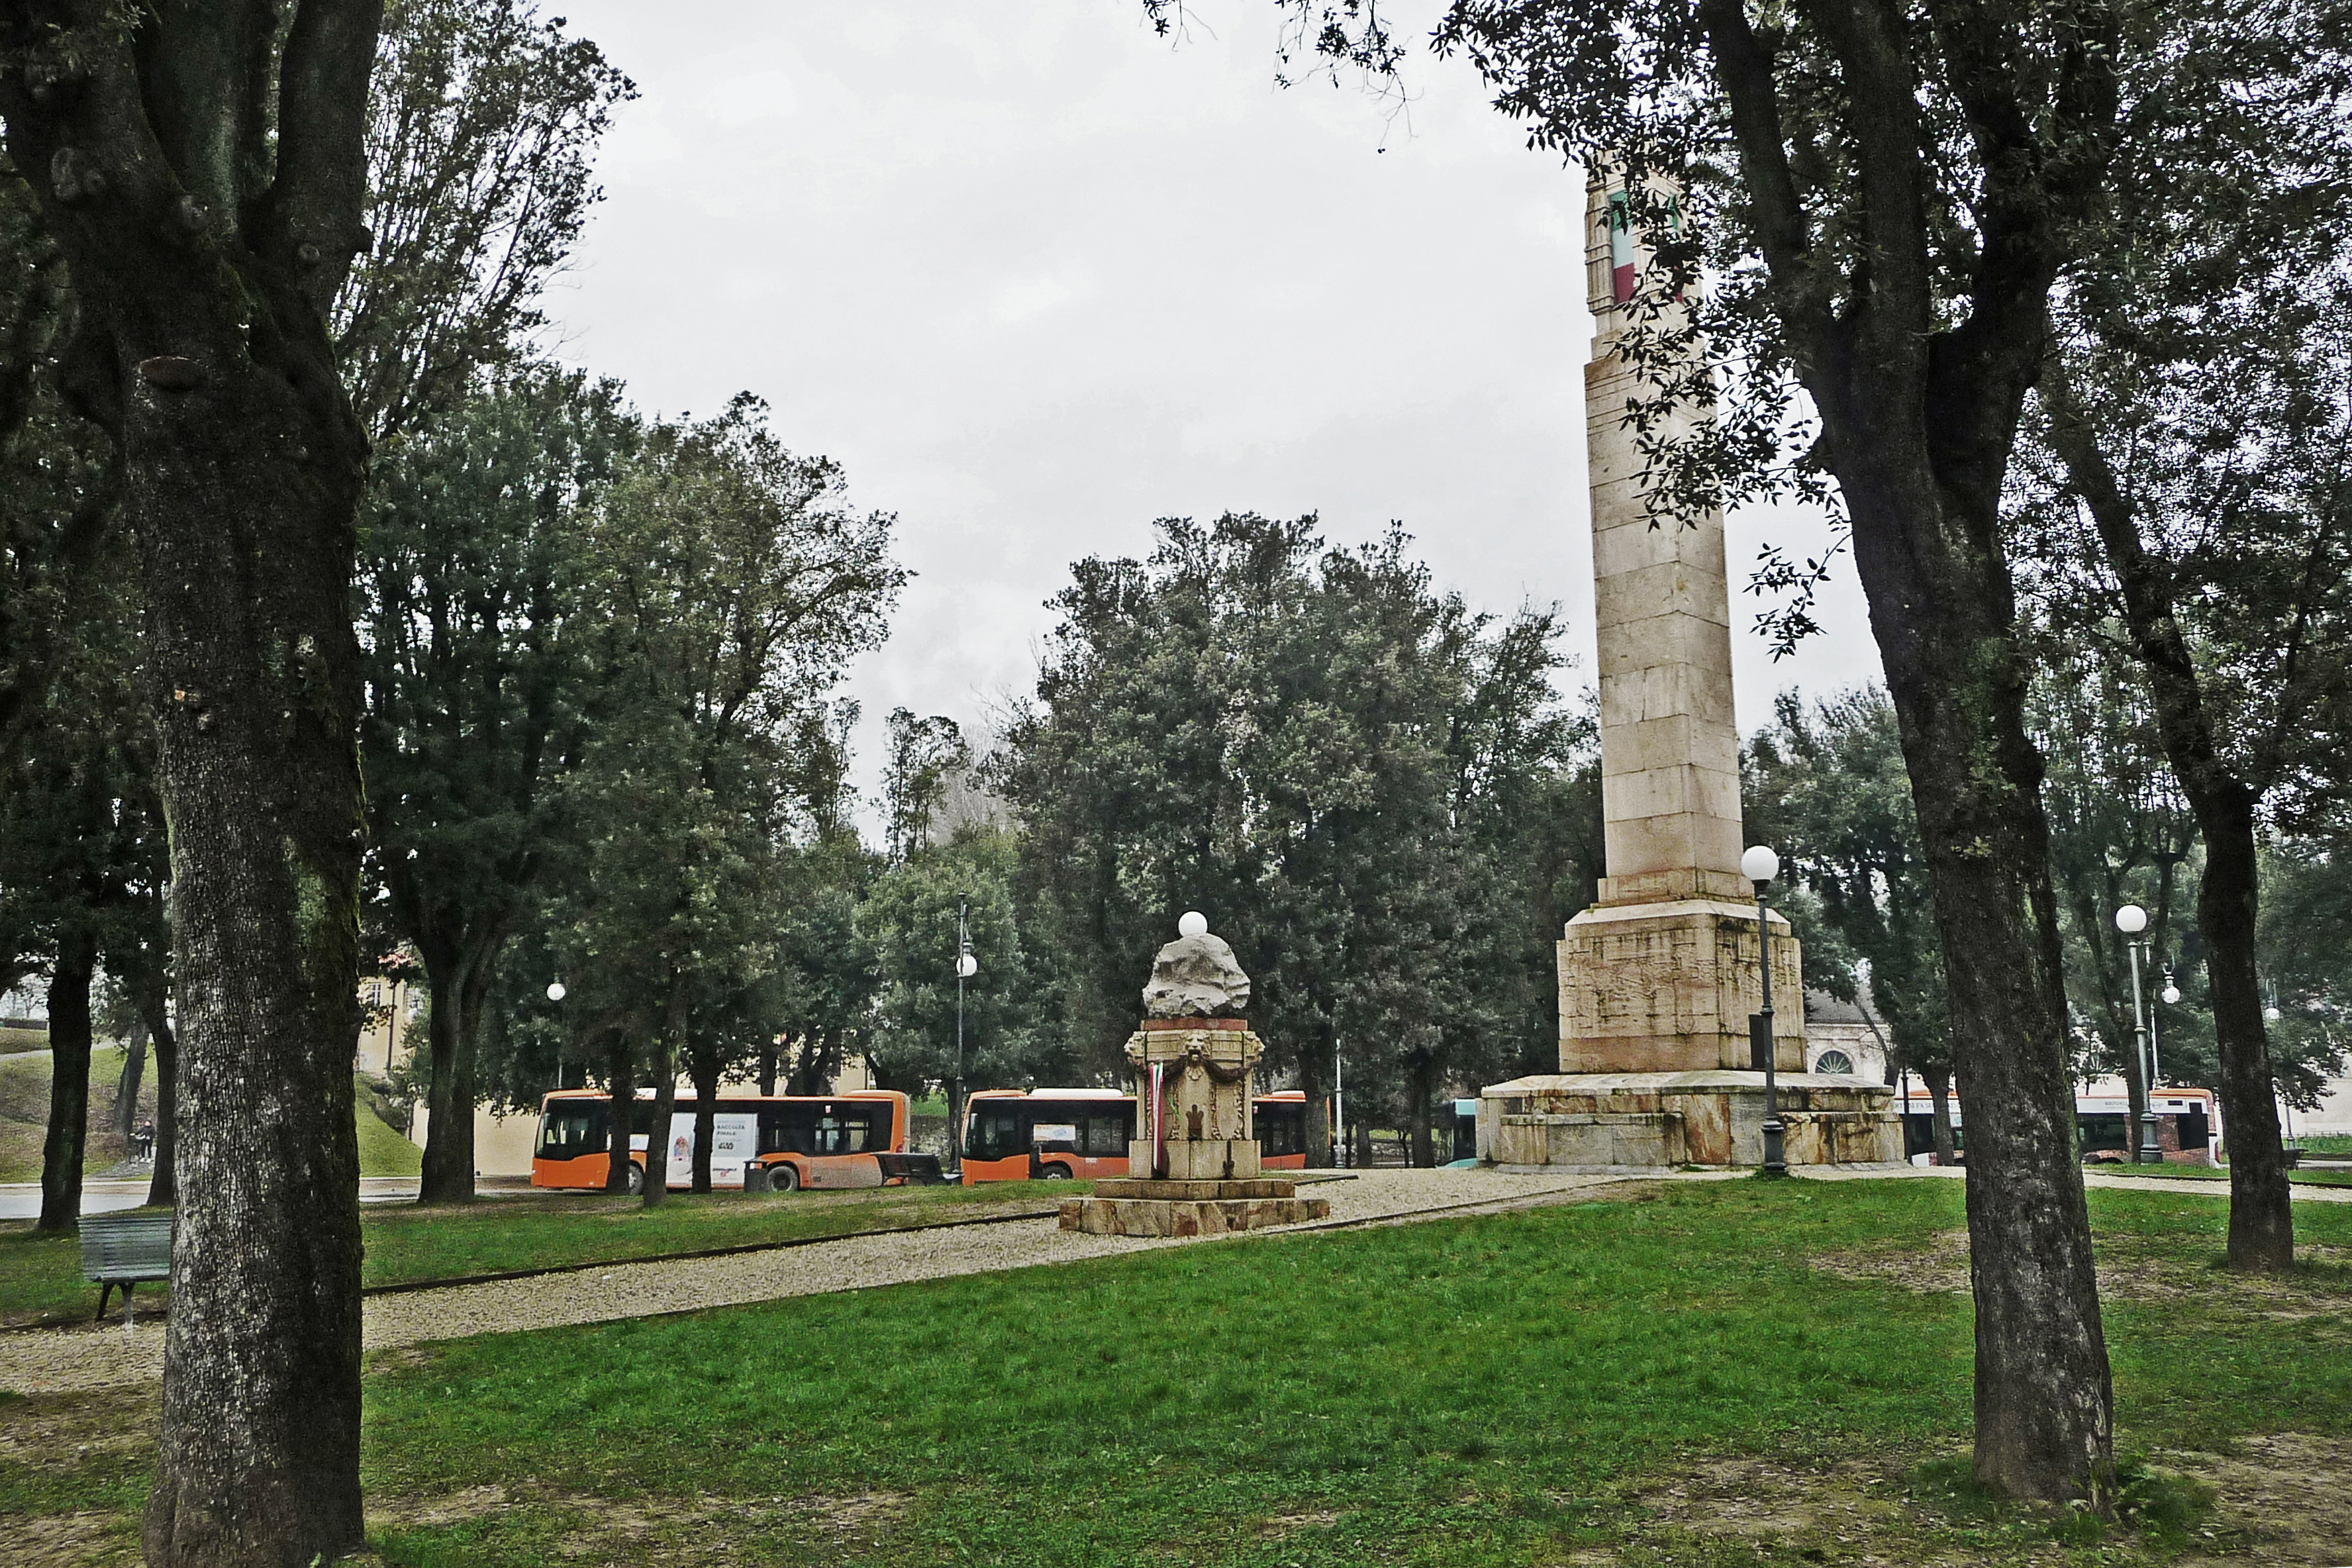 Parco della rimembranza di Lucca (parco, commemorativo/ ai caduti della prima guerra mondiale) - Lucca (LU) 